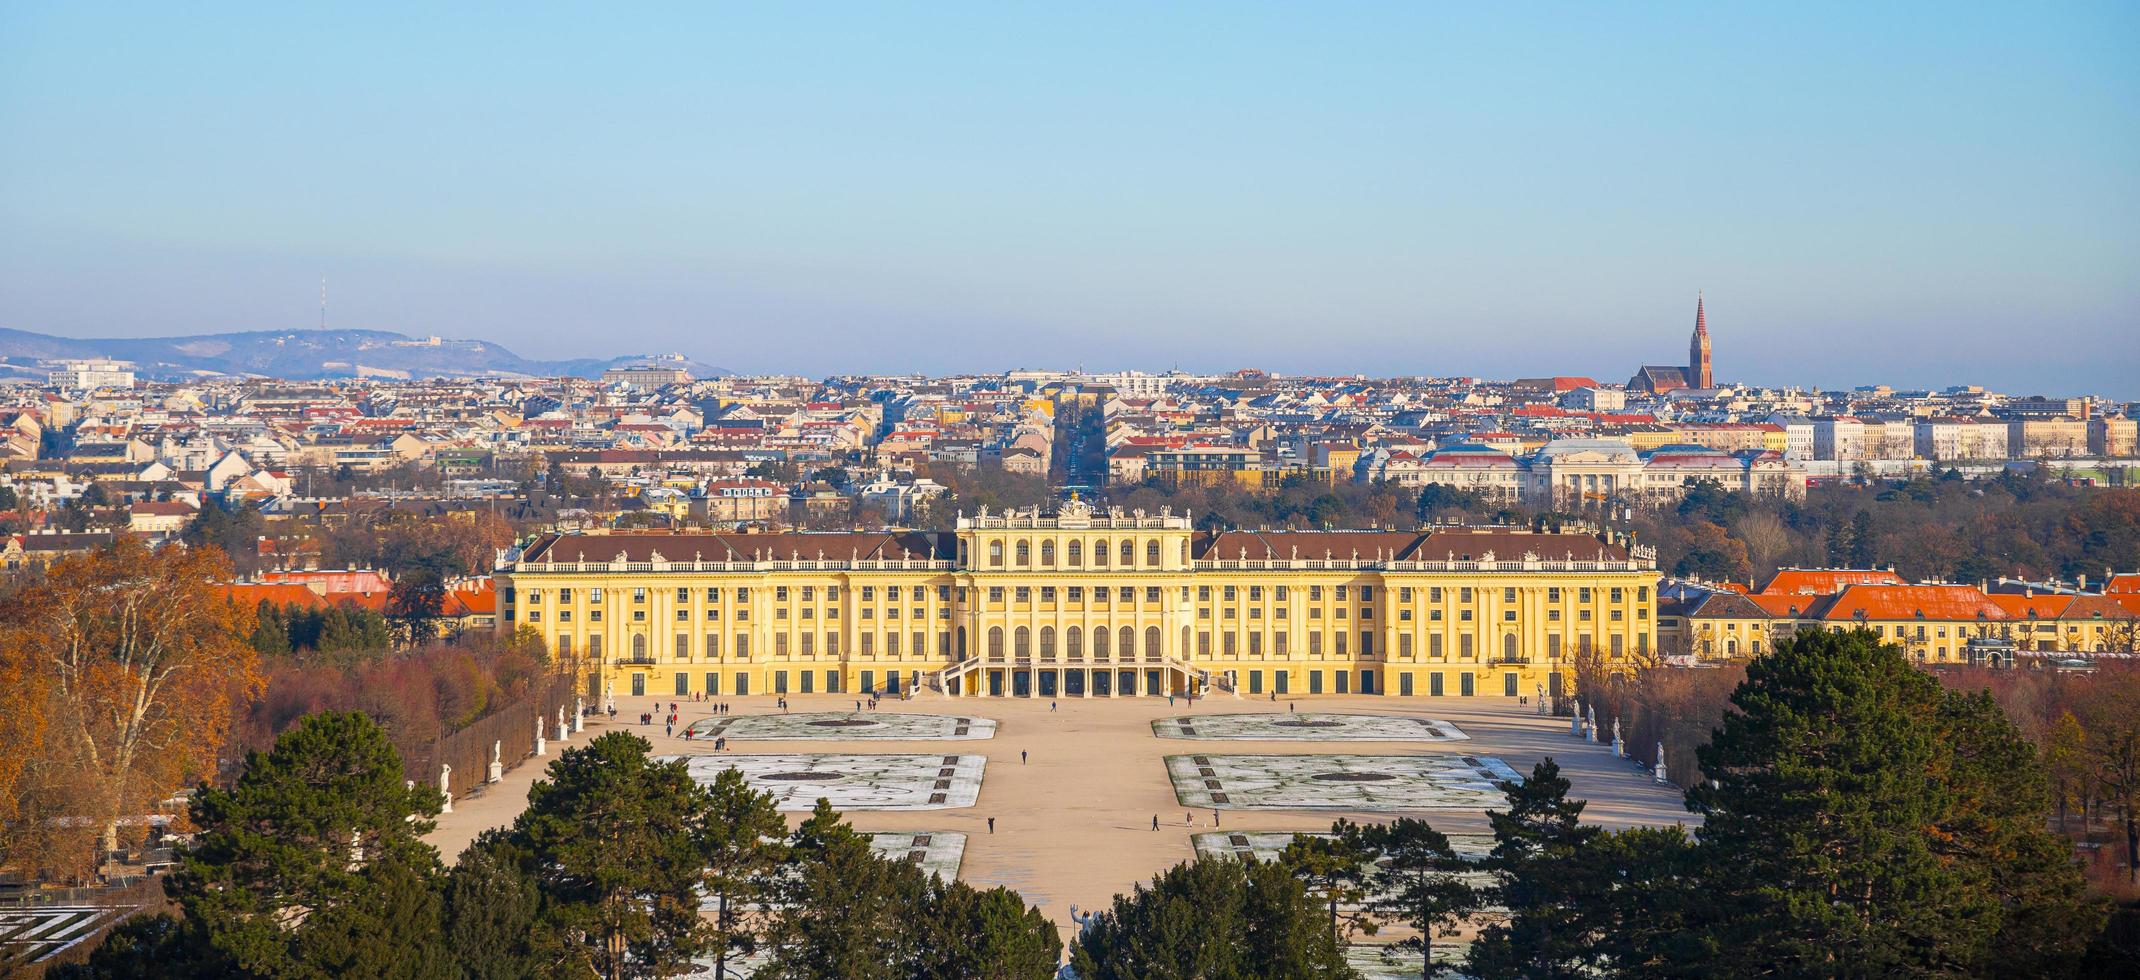 vienna, austria, 2021 - facciata del palazzo imperiale di schonbrunn foto